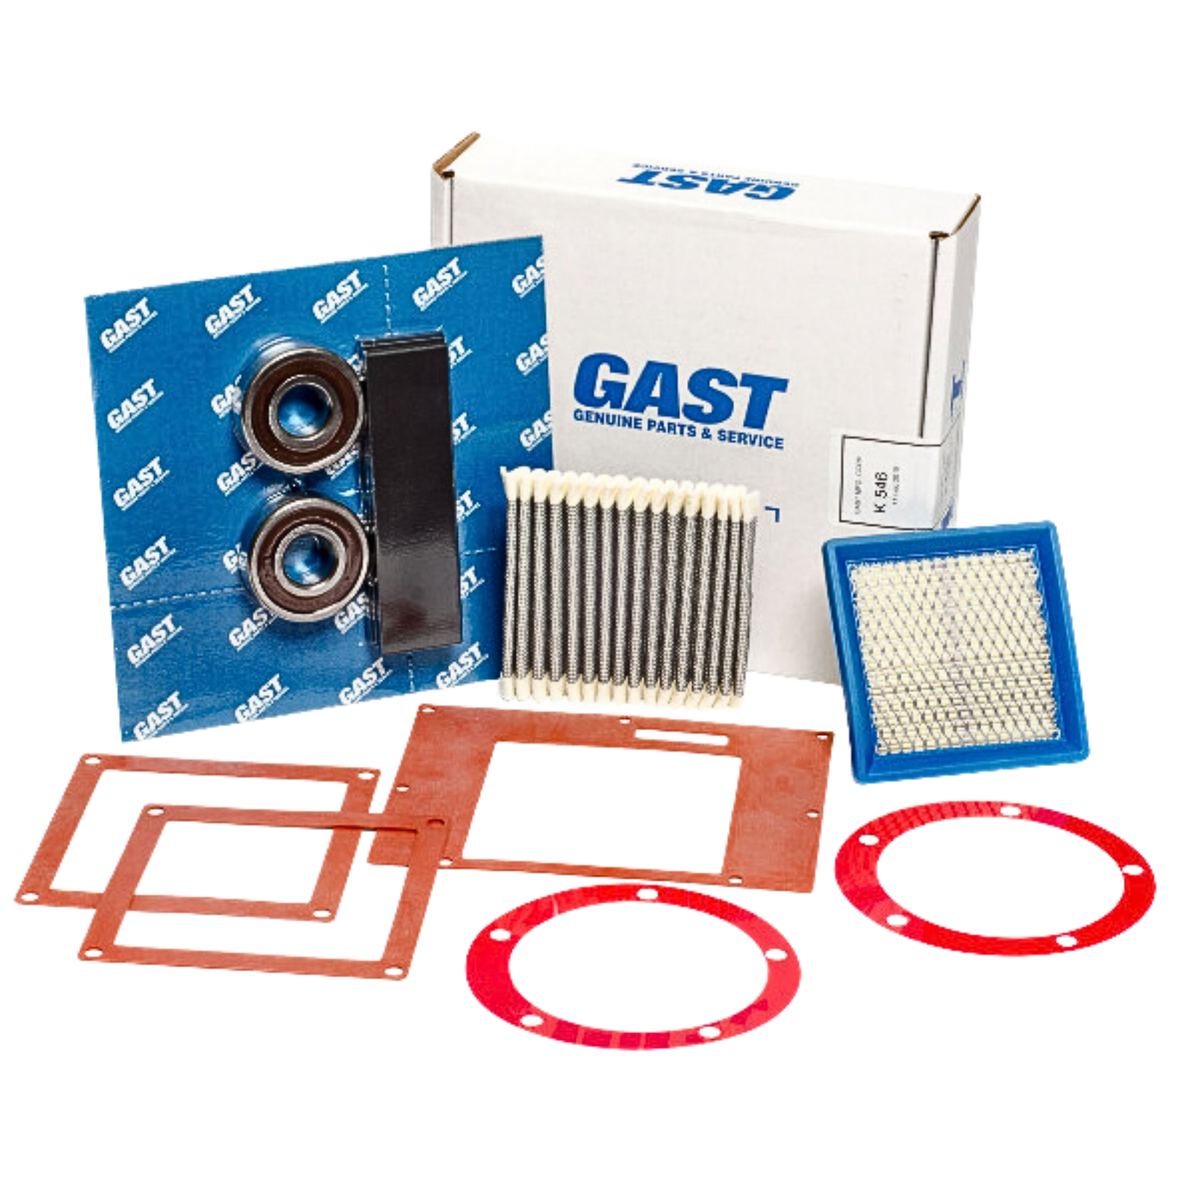 Gast | 2080/3080/4080 Service Kit | K546 used on gast product line